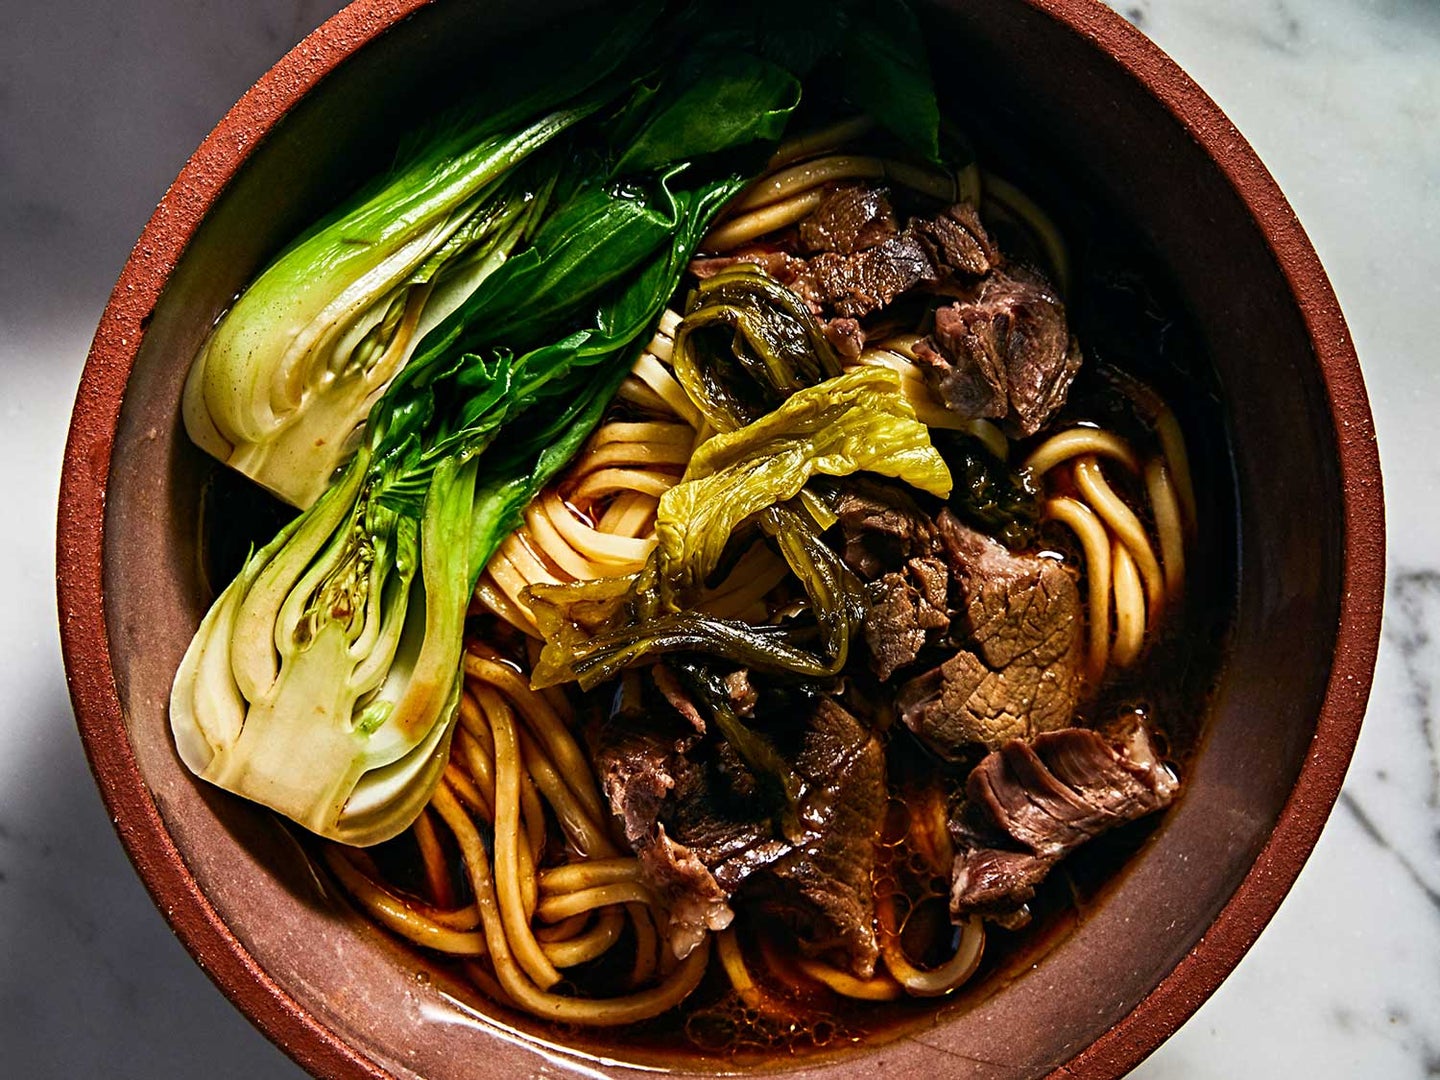 Taiwanese Beef Noodle Soup (Hong Shao Niu Rou Mian